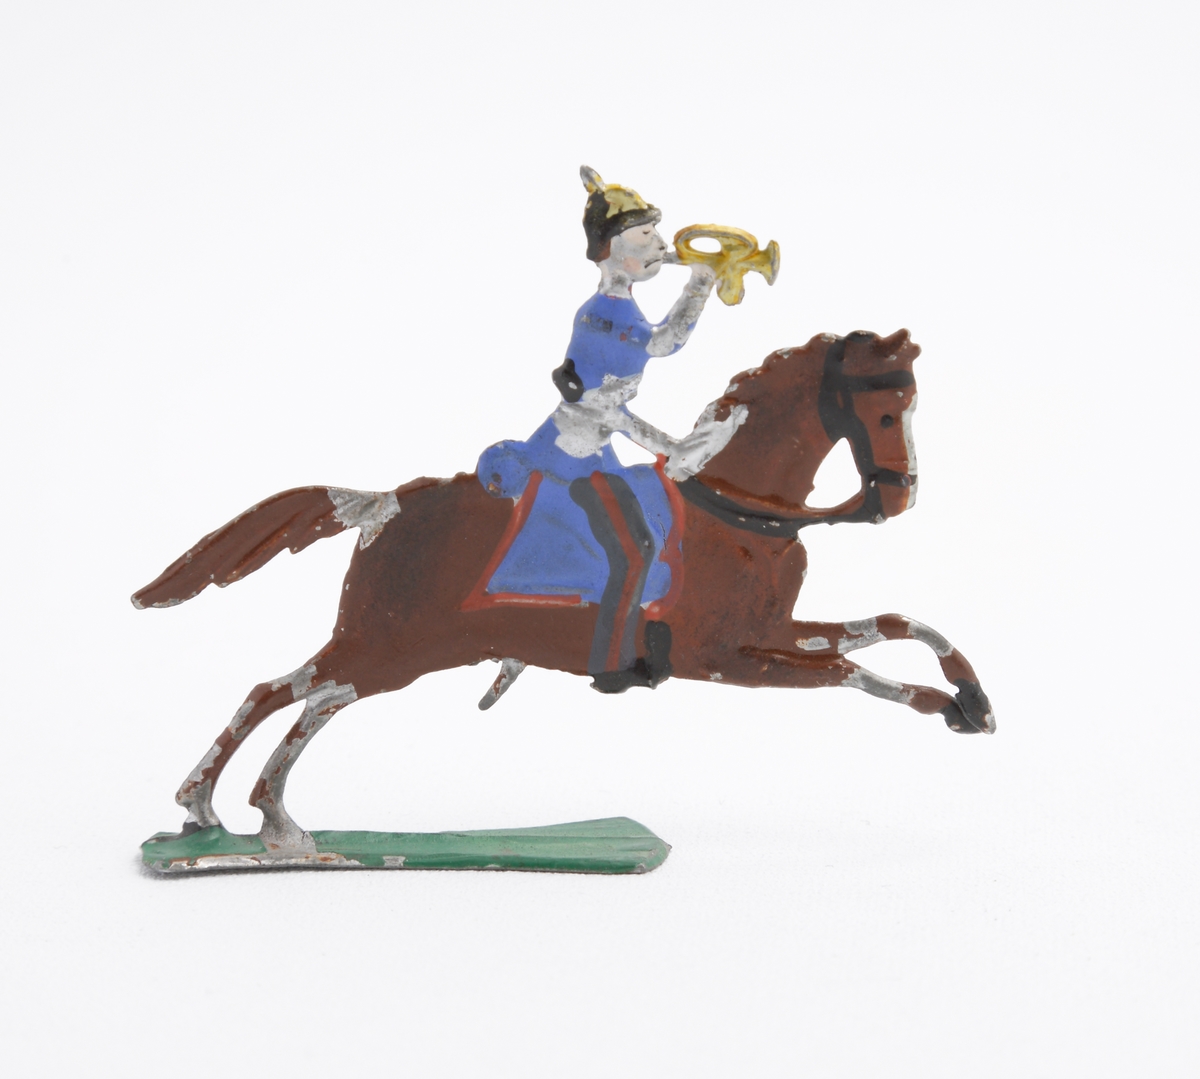 Ryttare till häst i blå uniform, trumpetare. Han är utrustad med koppel och pickelhuva. Sadeln är blå med röda kanter. Hästen brun på grön platta.
Inskrivet i huvudkatalog 1963.